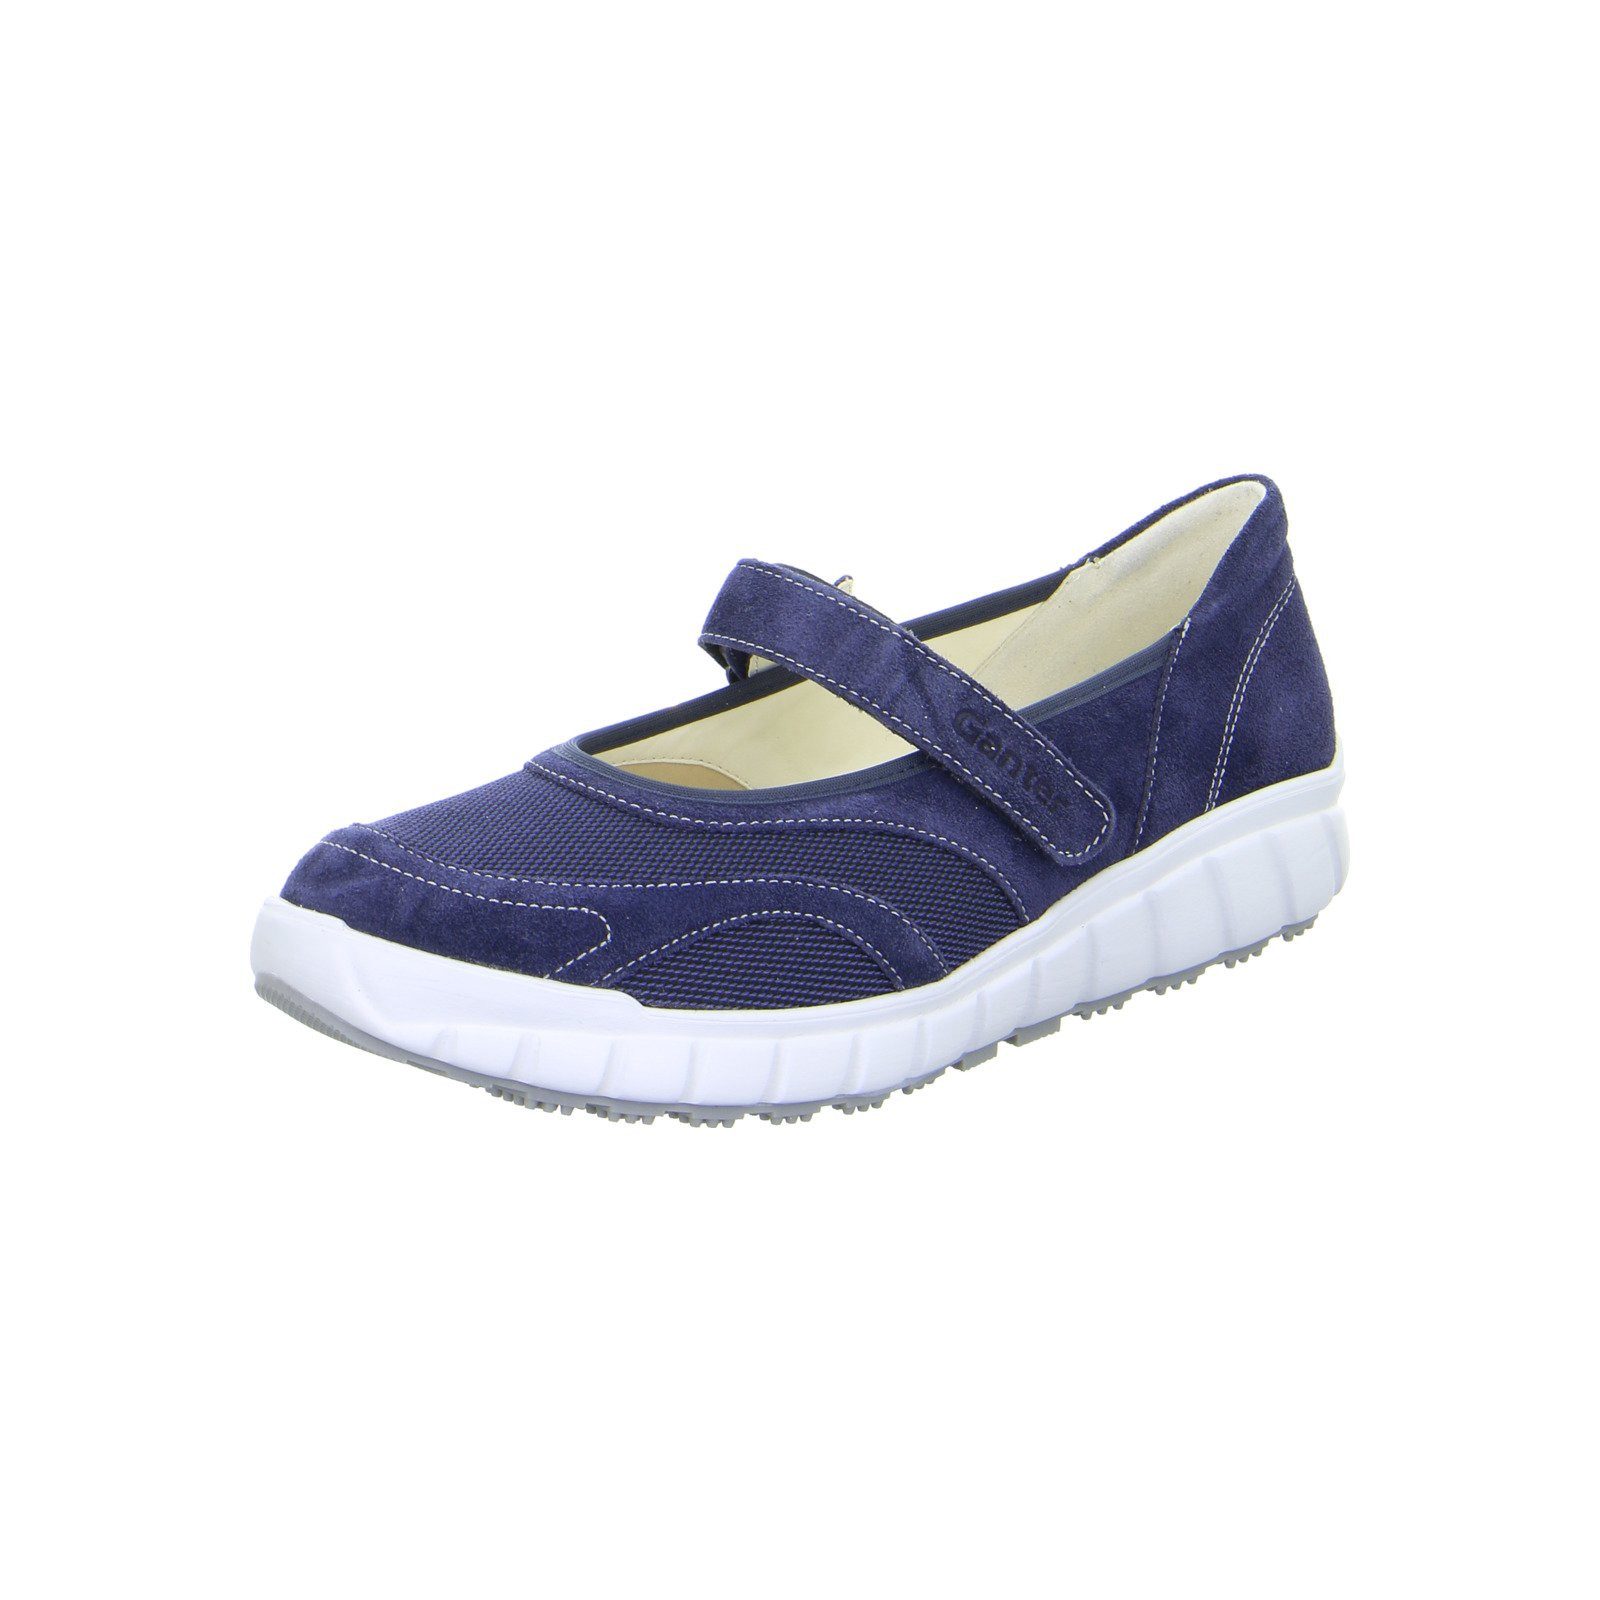 Ganter Evo - Damen Schuhe Slipper Ballerina Materialmix blau